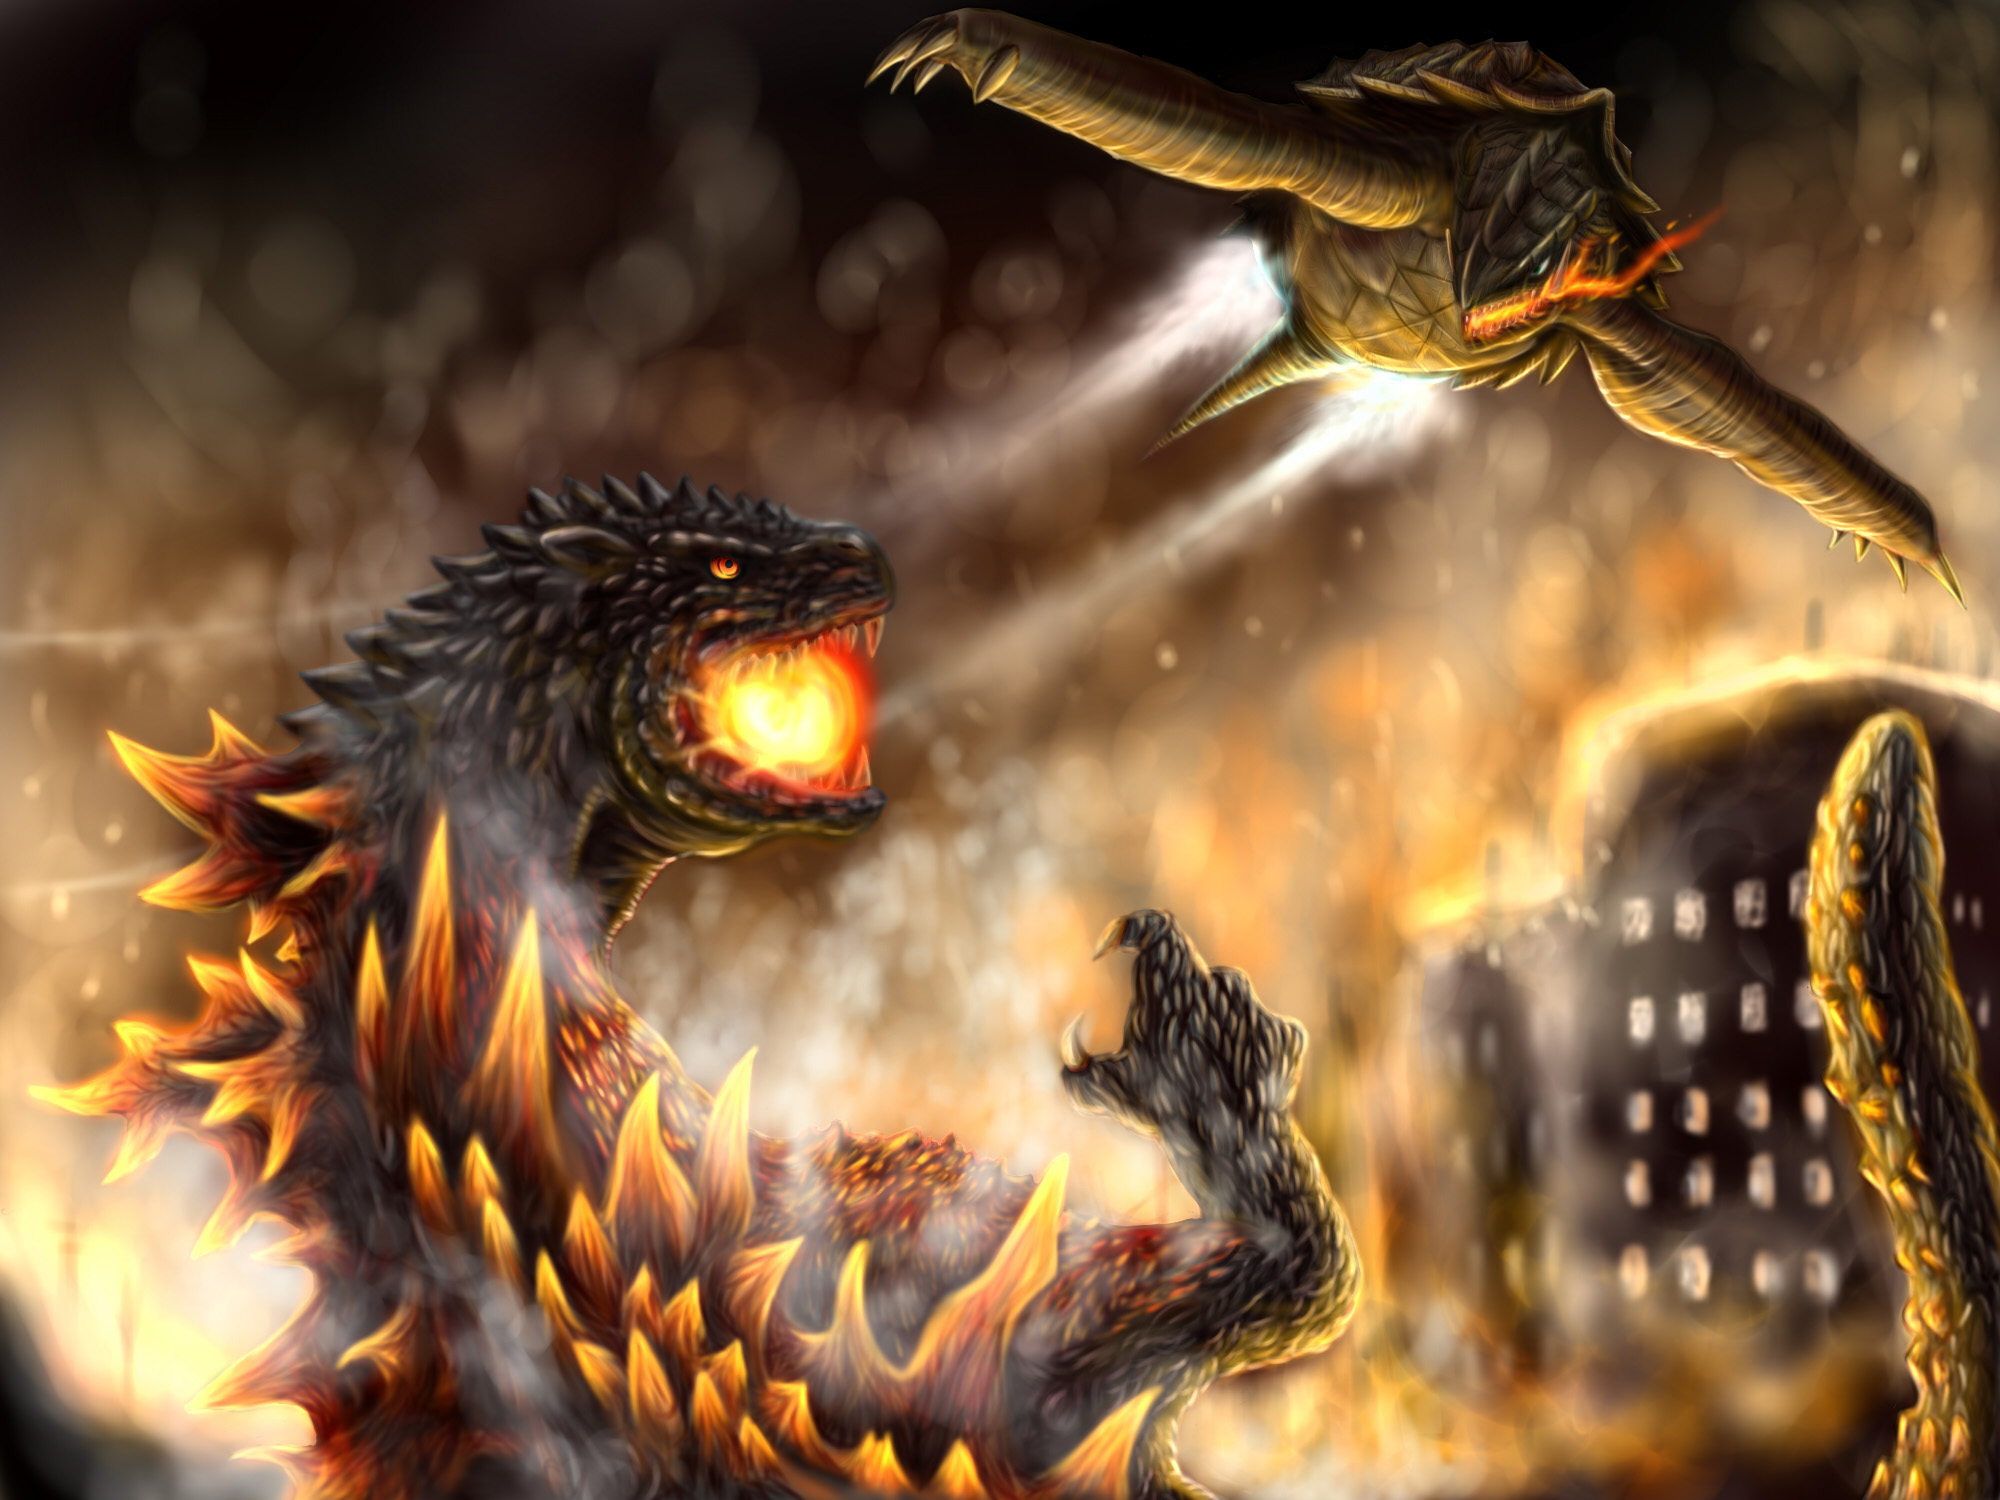 圧倒的破壊力 大迫力 戦うゴジライラスト集の画像 03 Godzilla